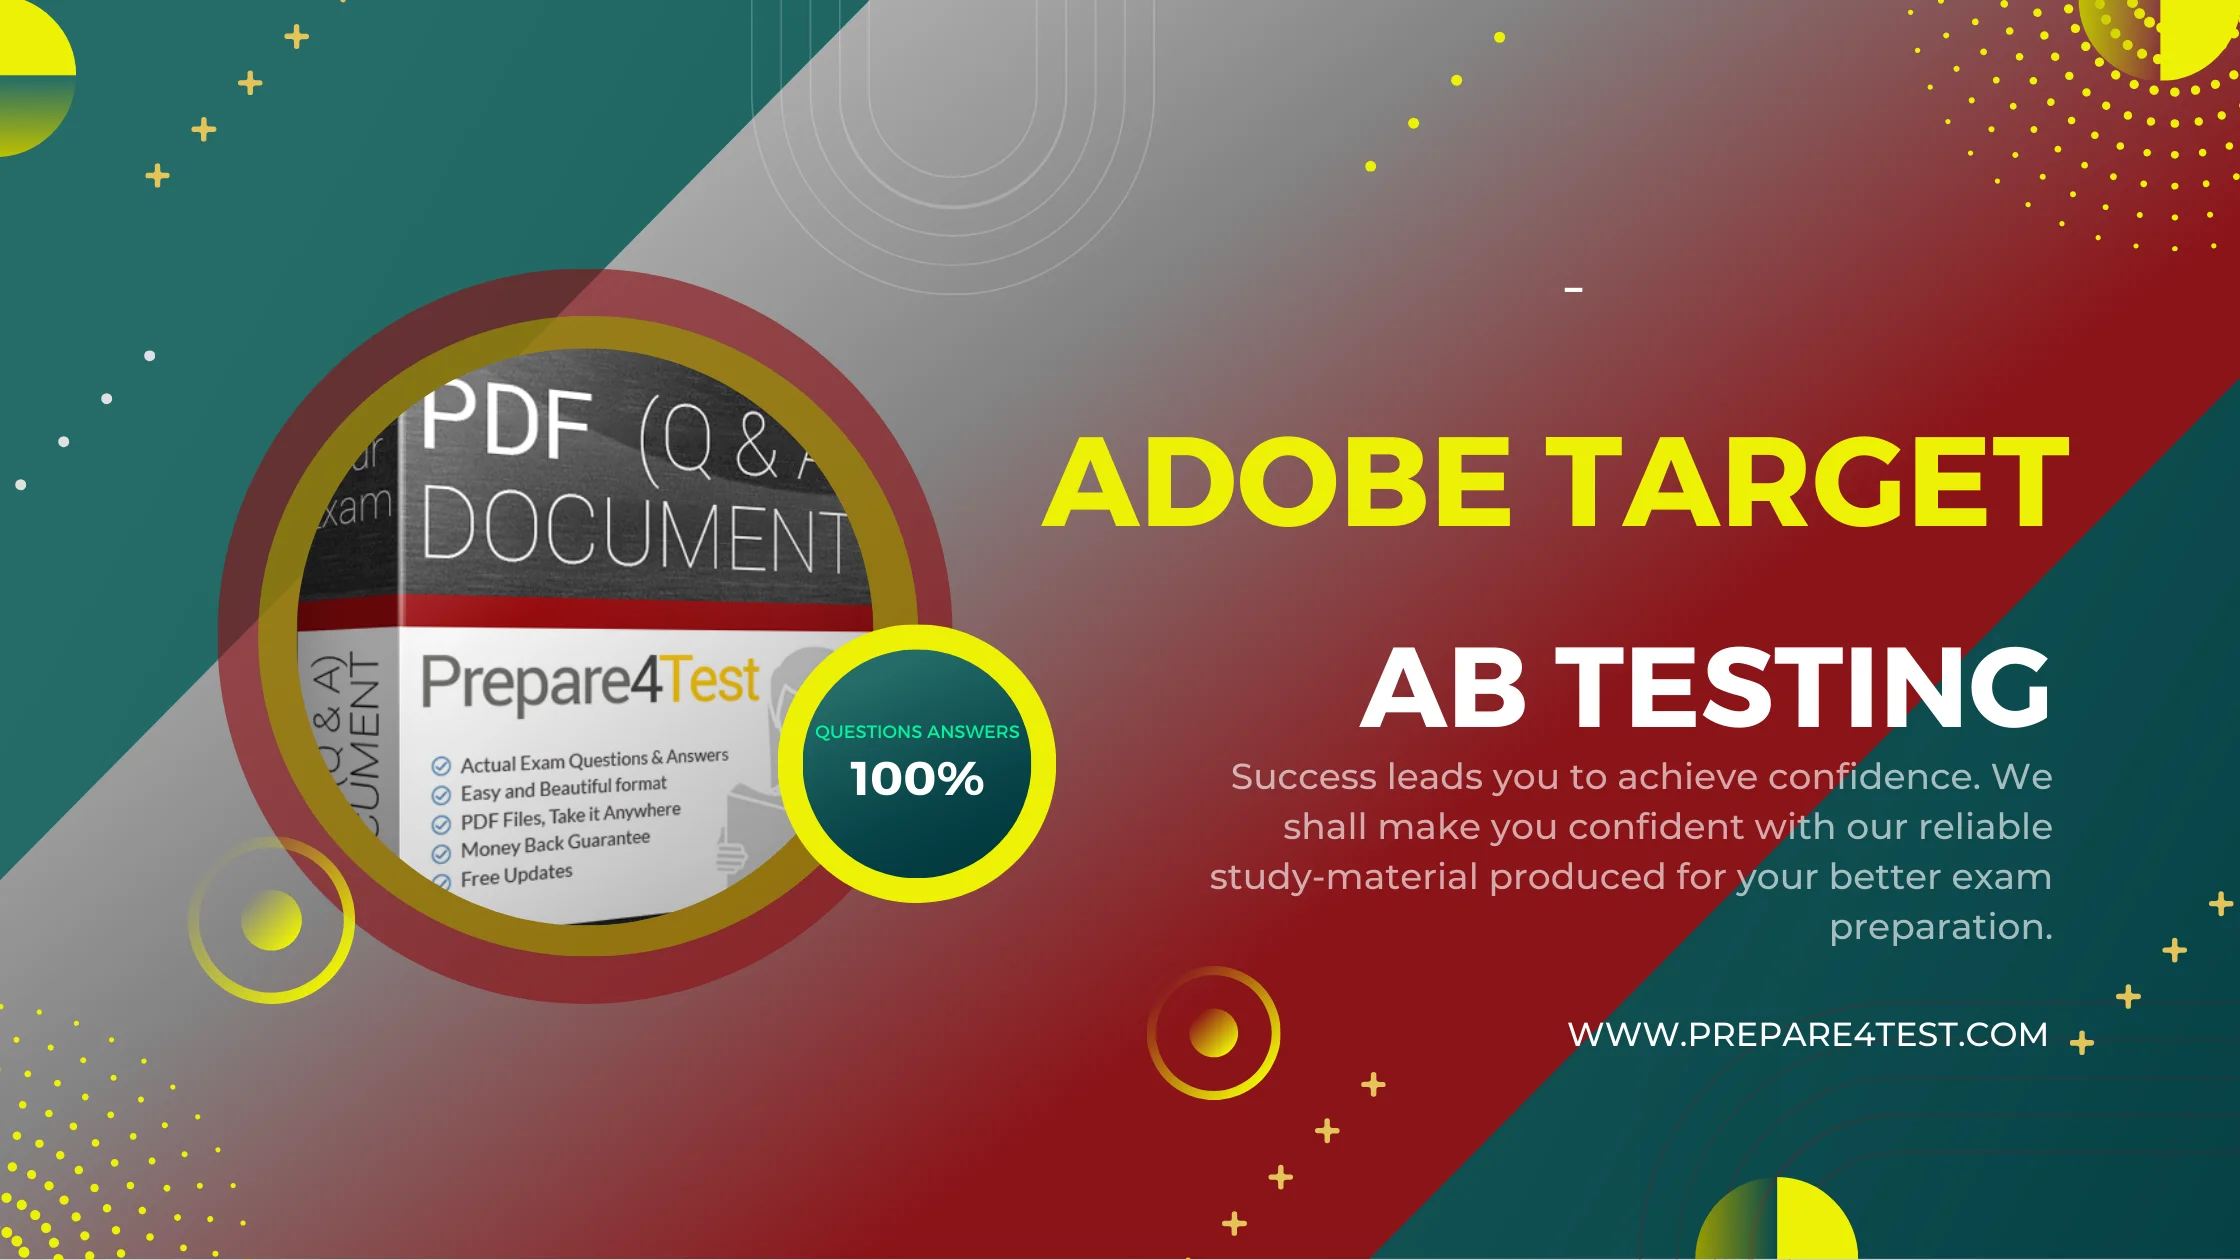 Adobe Target AB Testing promo